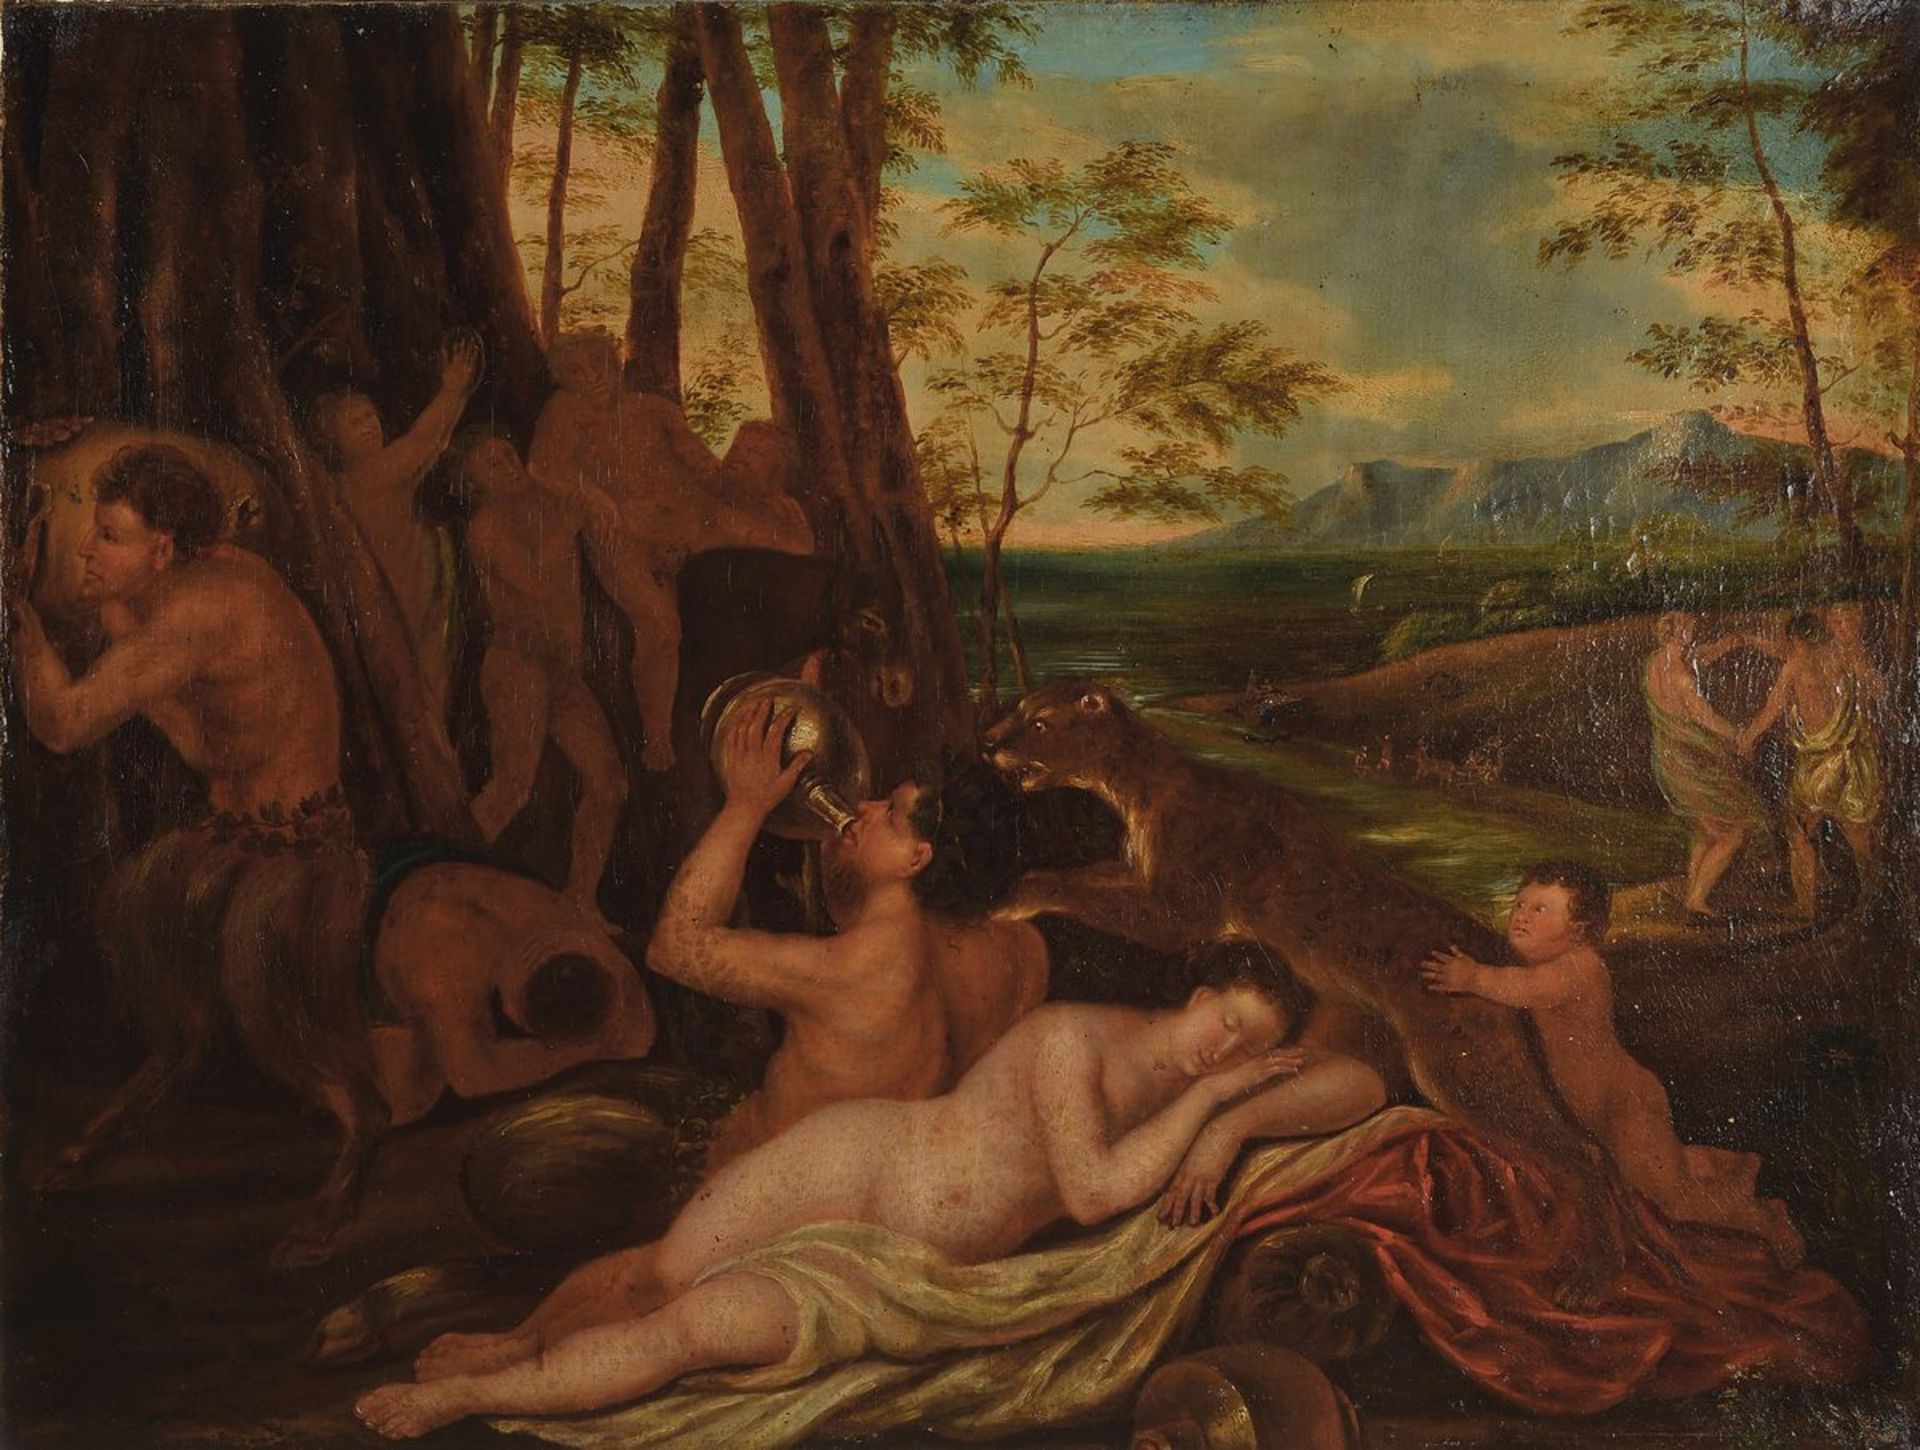 Unbekannter italienischer Meister des 17./18. Jh., nach dem Vorbild von 1560, Landschaft mit Szene